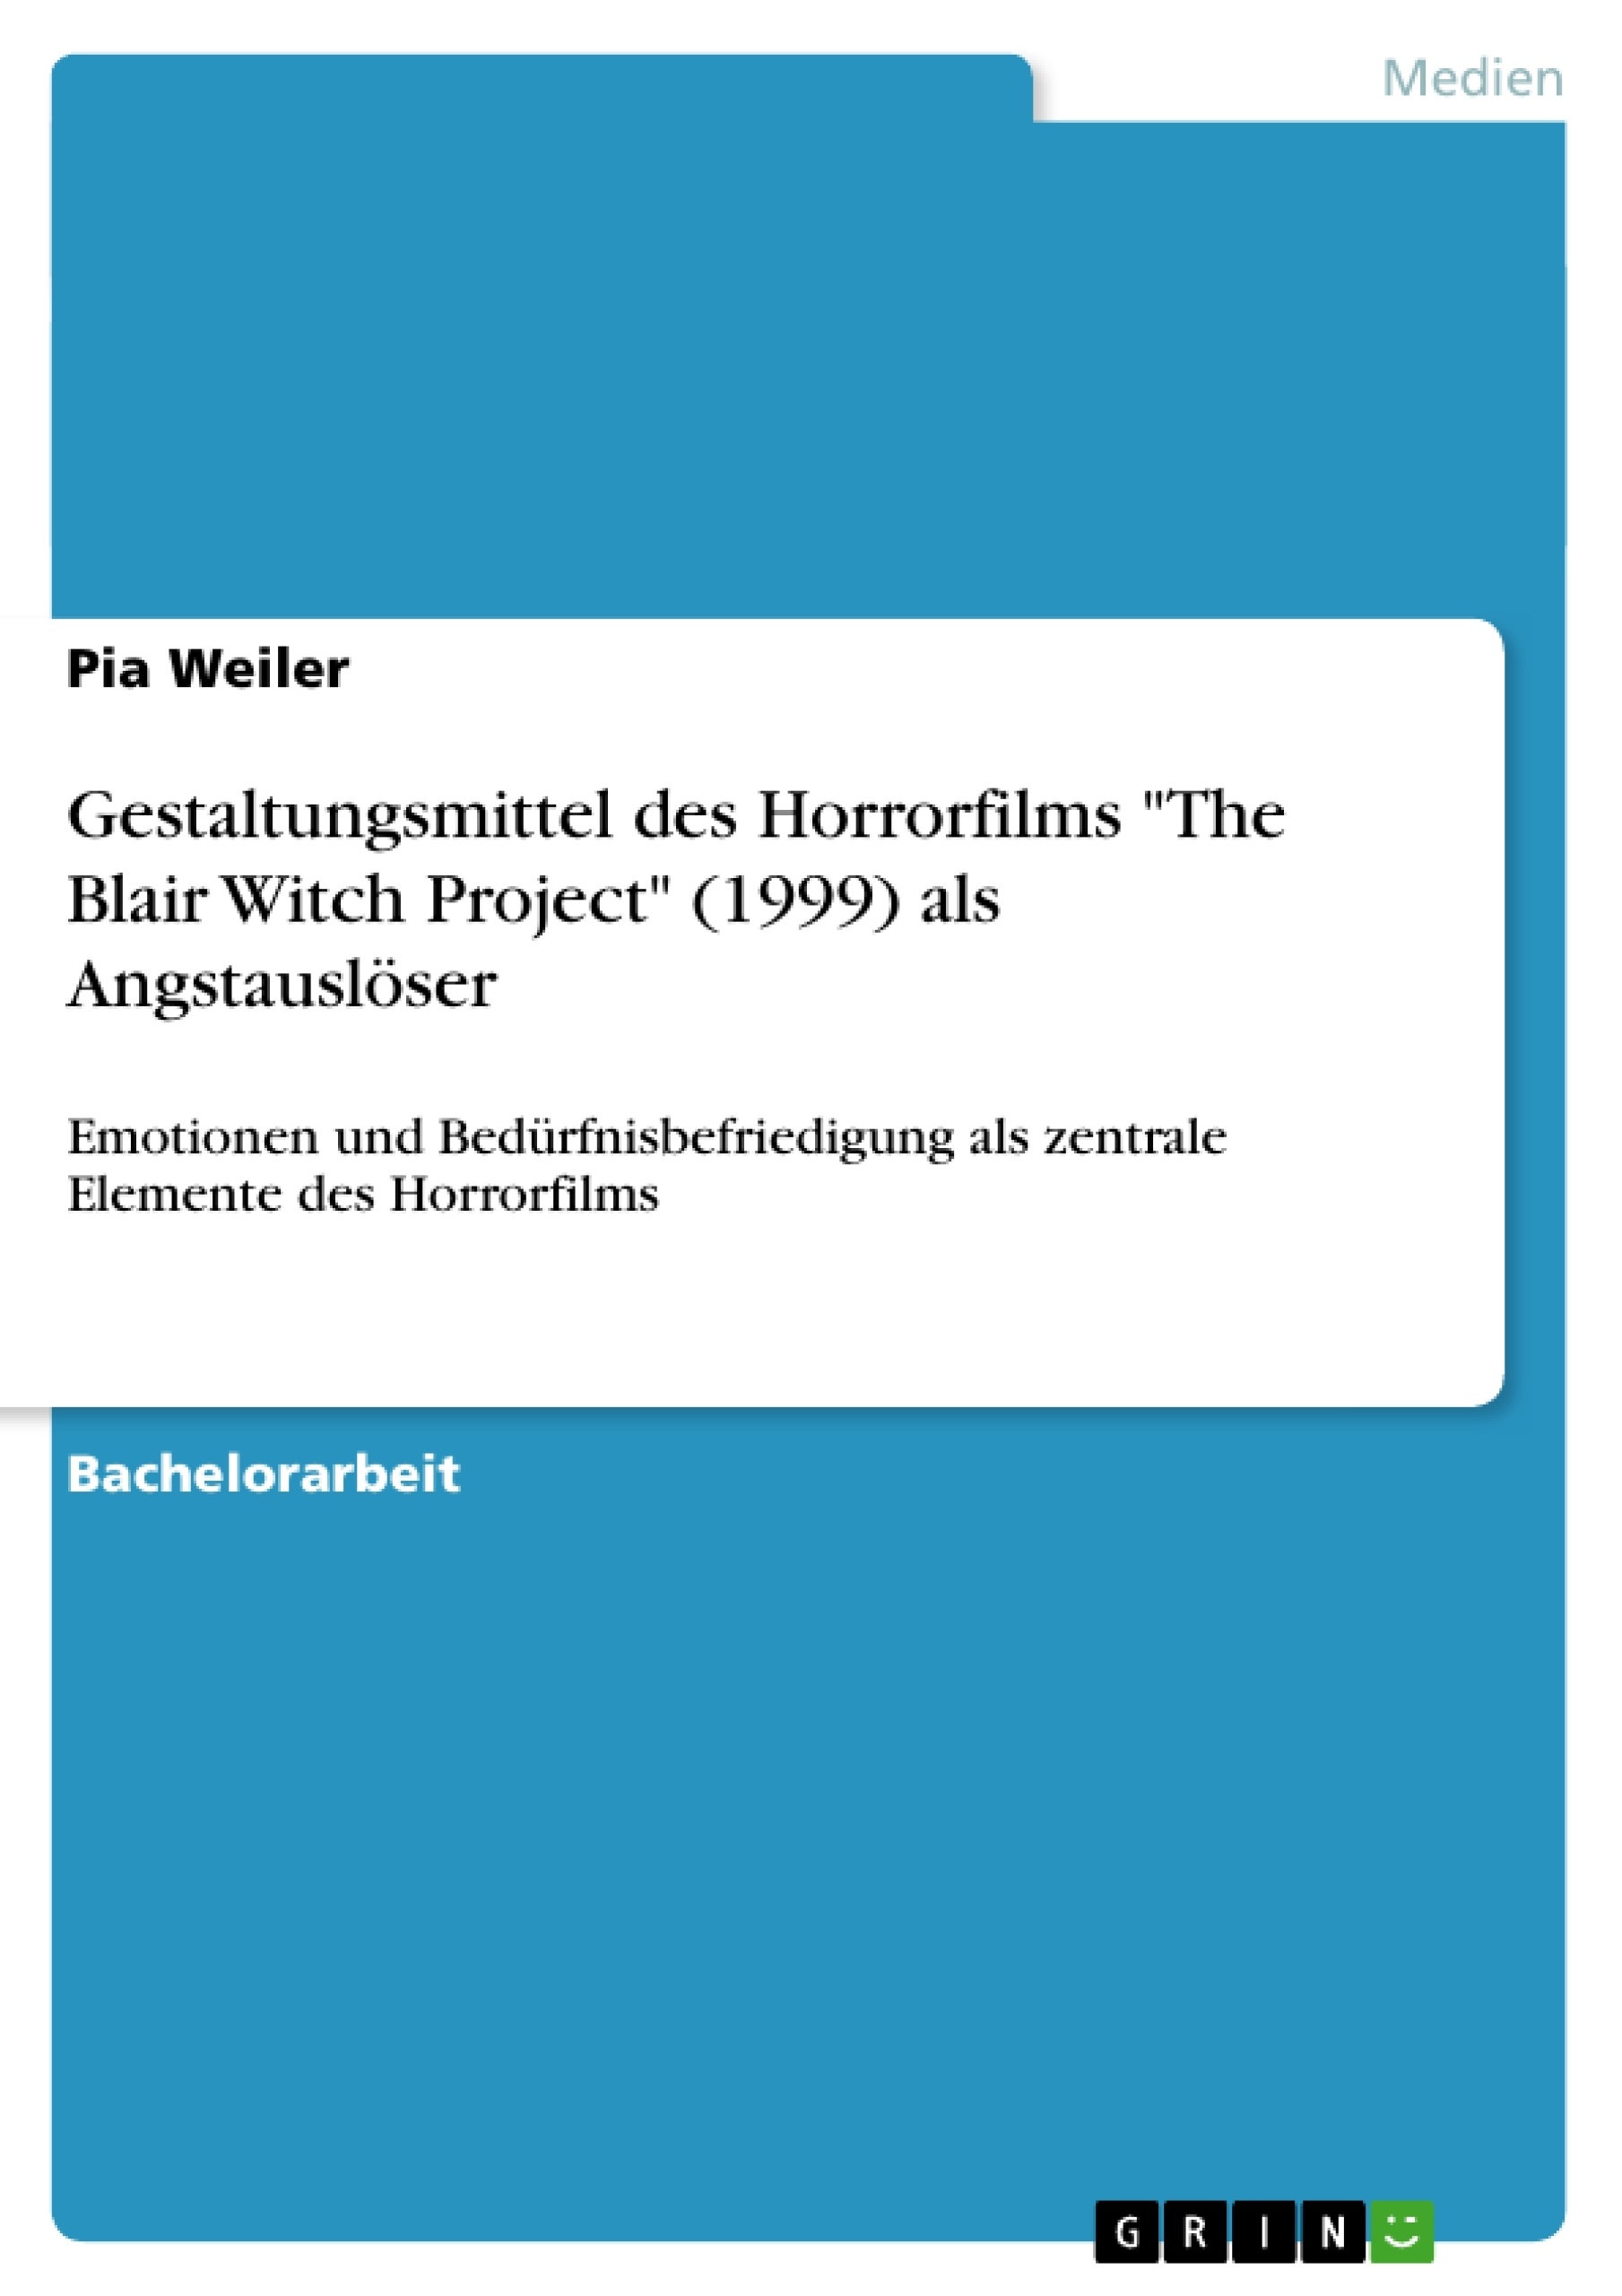 Titre: Gestaltungsmittel des Horrorfilms "The Blair Witch Project" (1999) als Angstauslöser